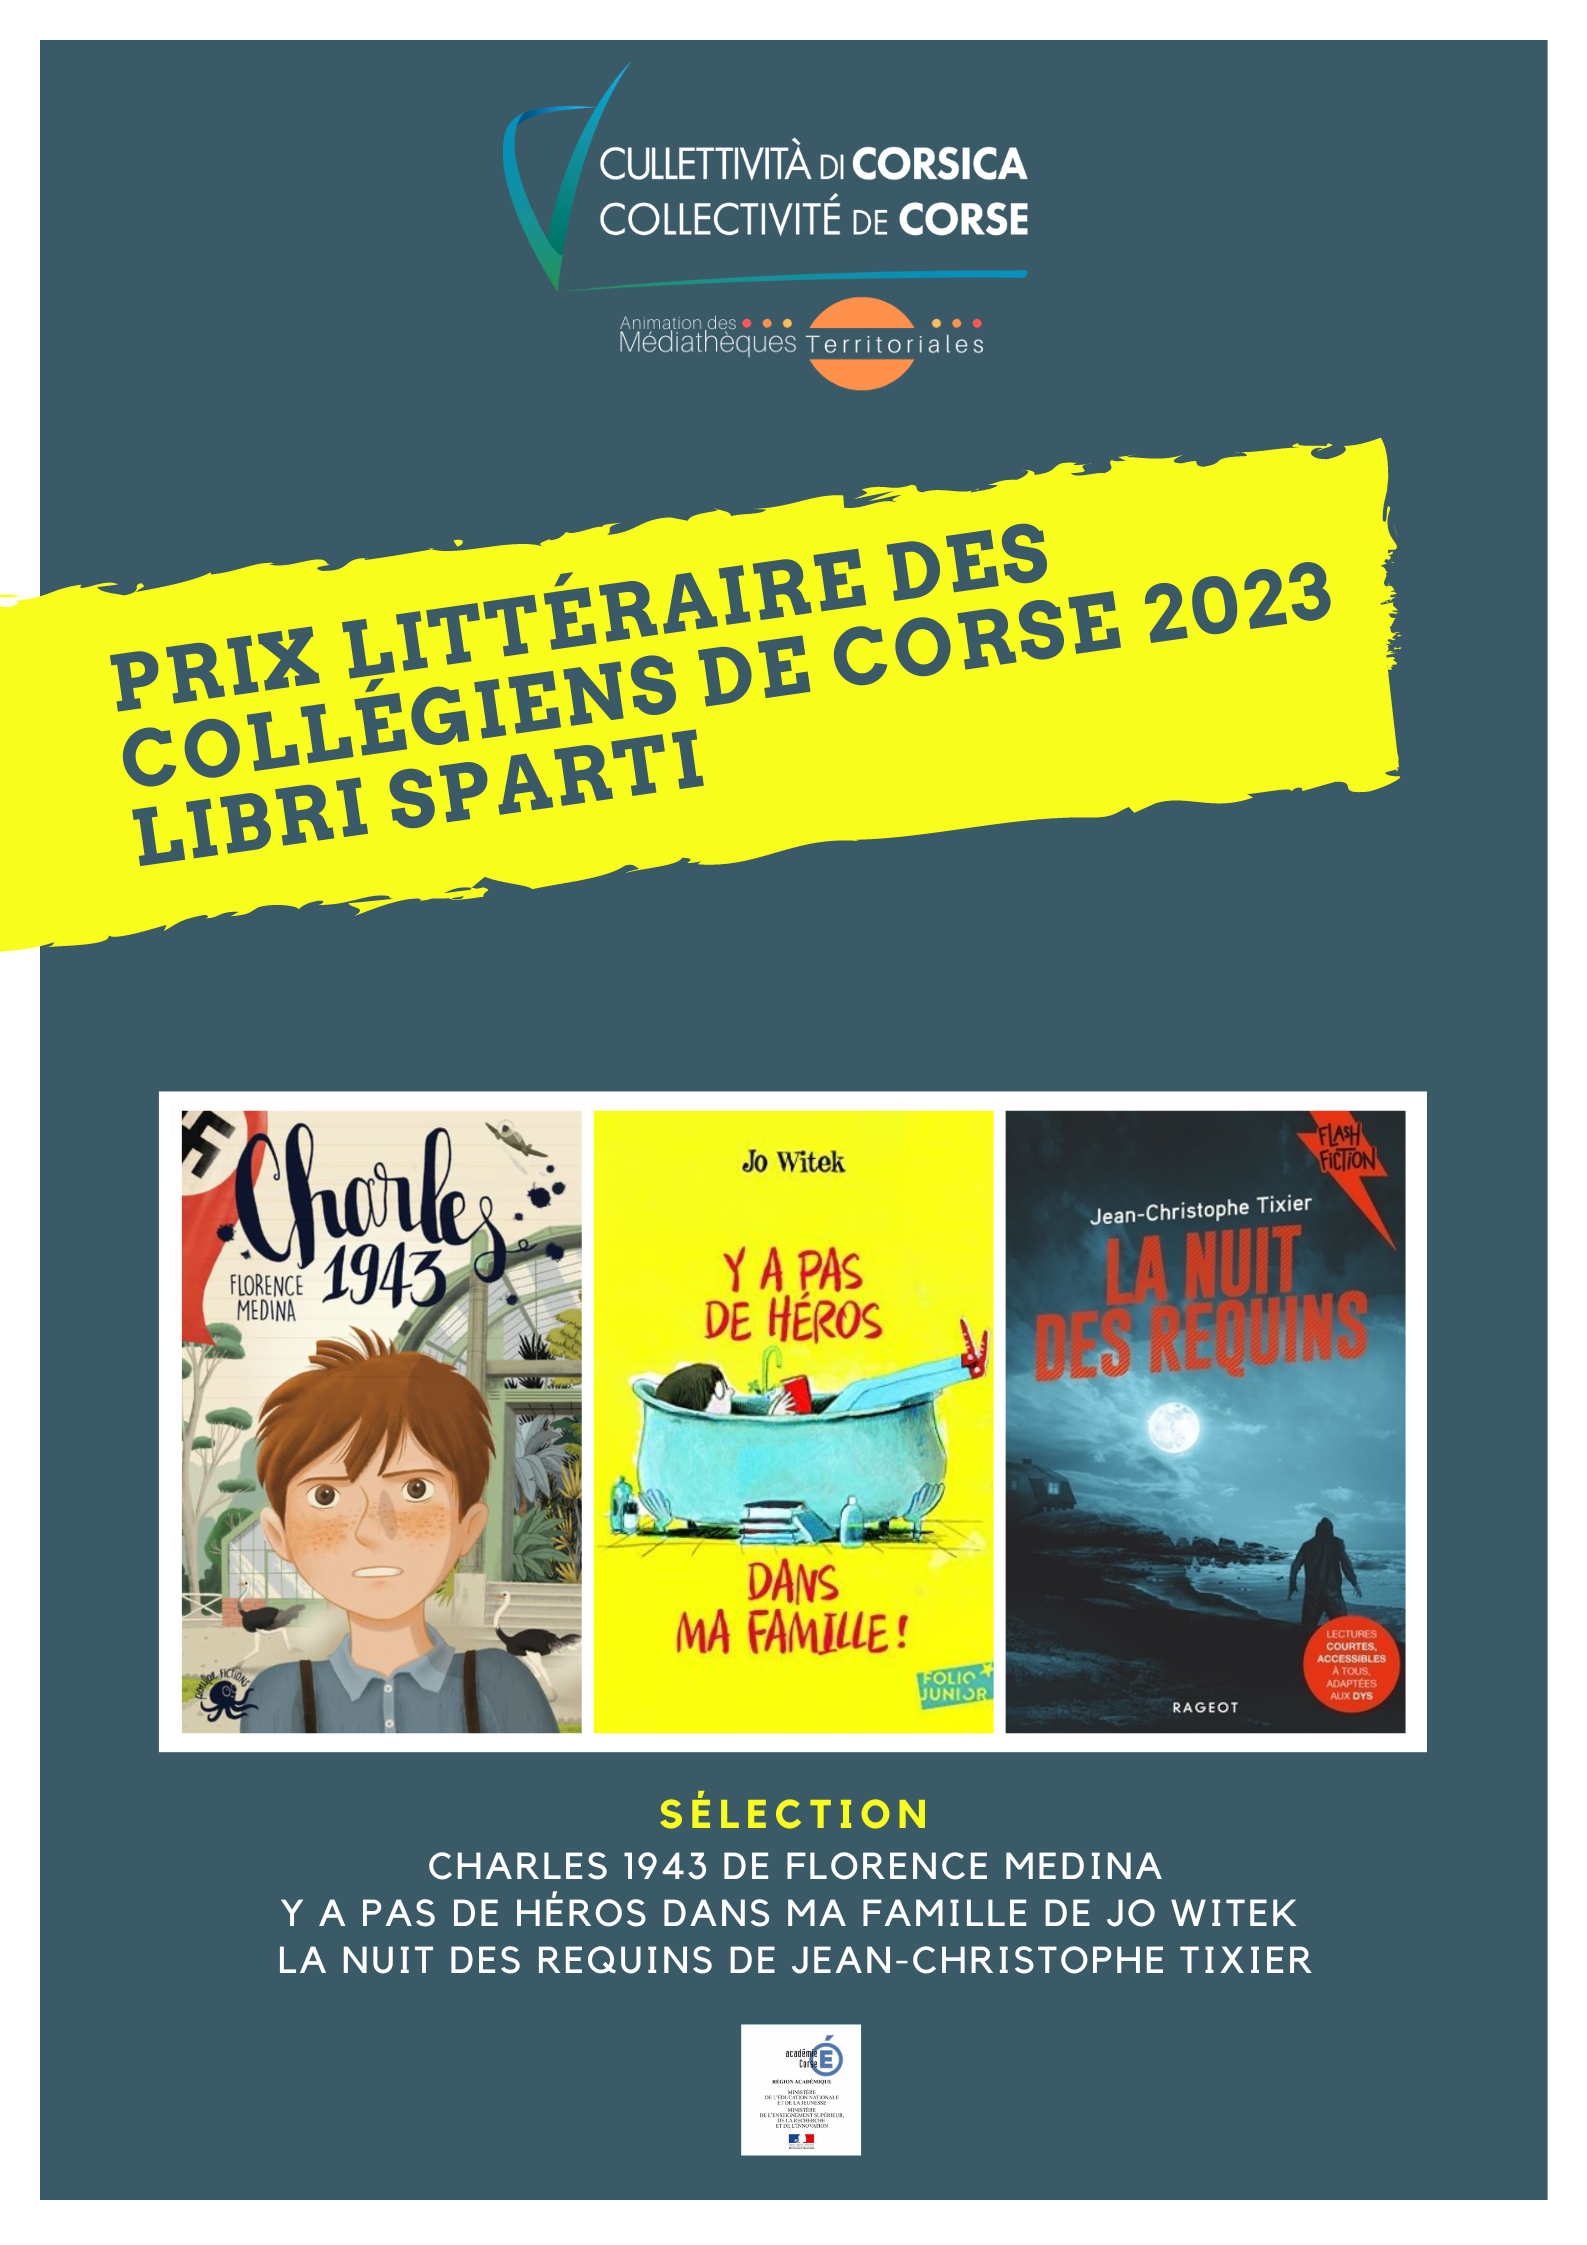 Finistère : le premier prix littéraire des collégiens 